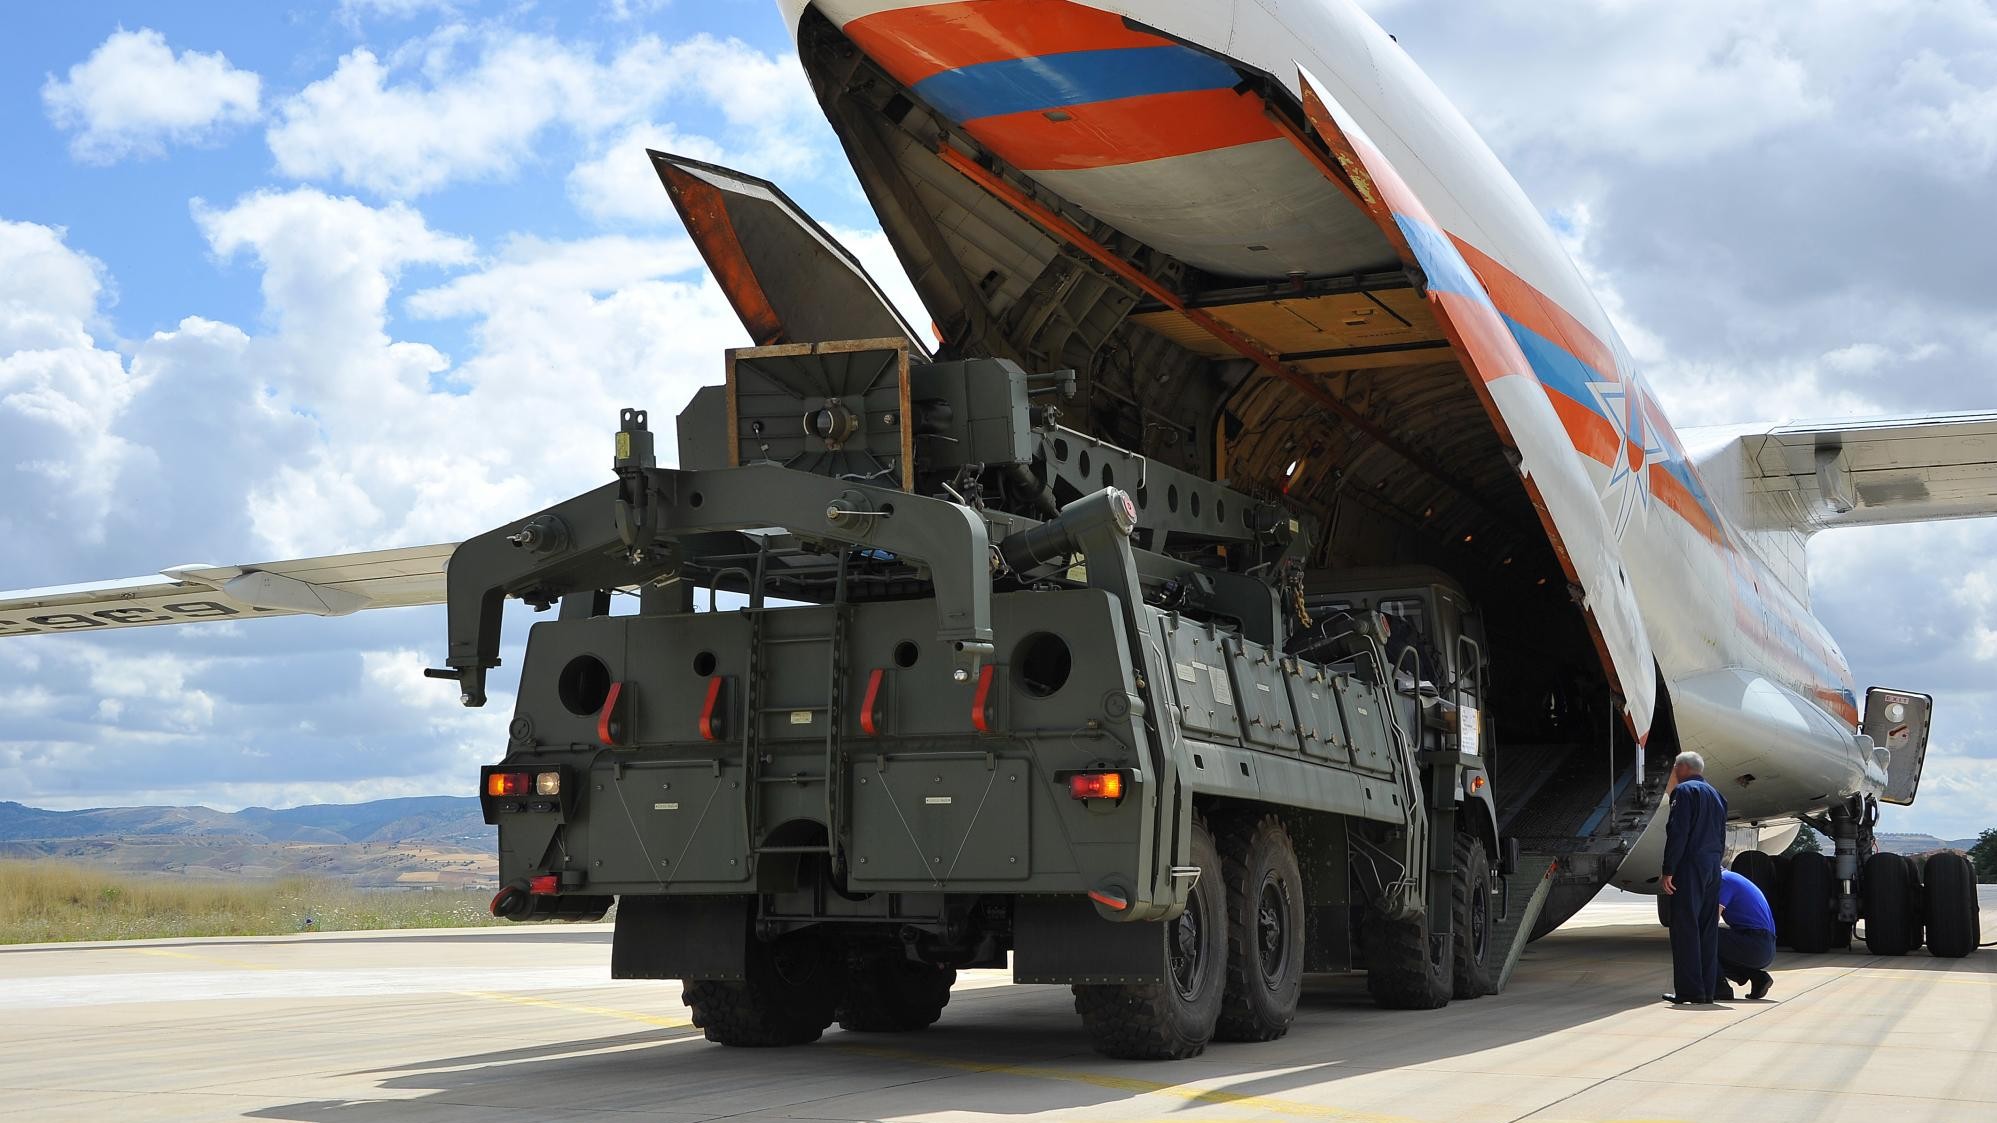 Sicherheitspolitik: Türkei bremst Nato-Raketenabwehr